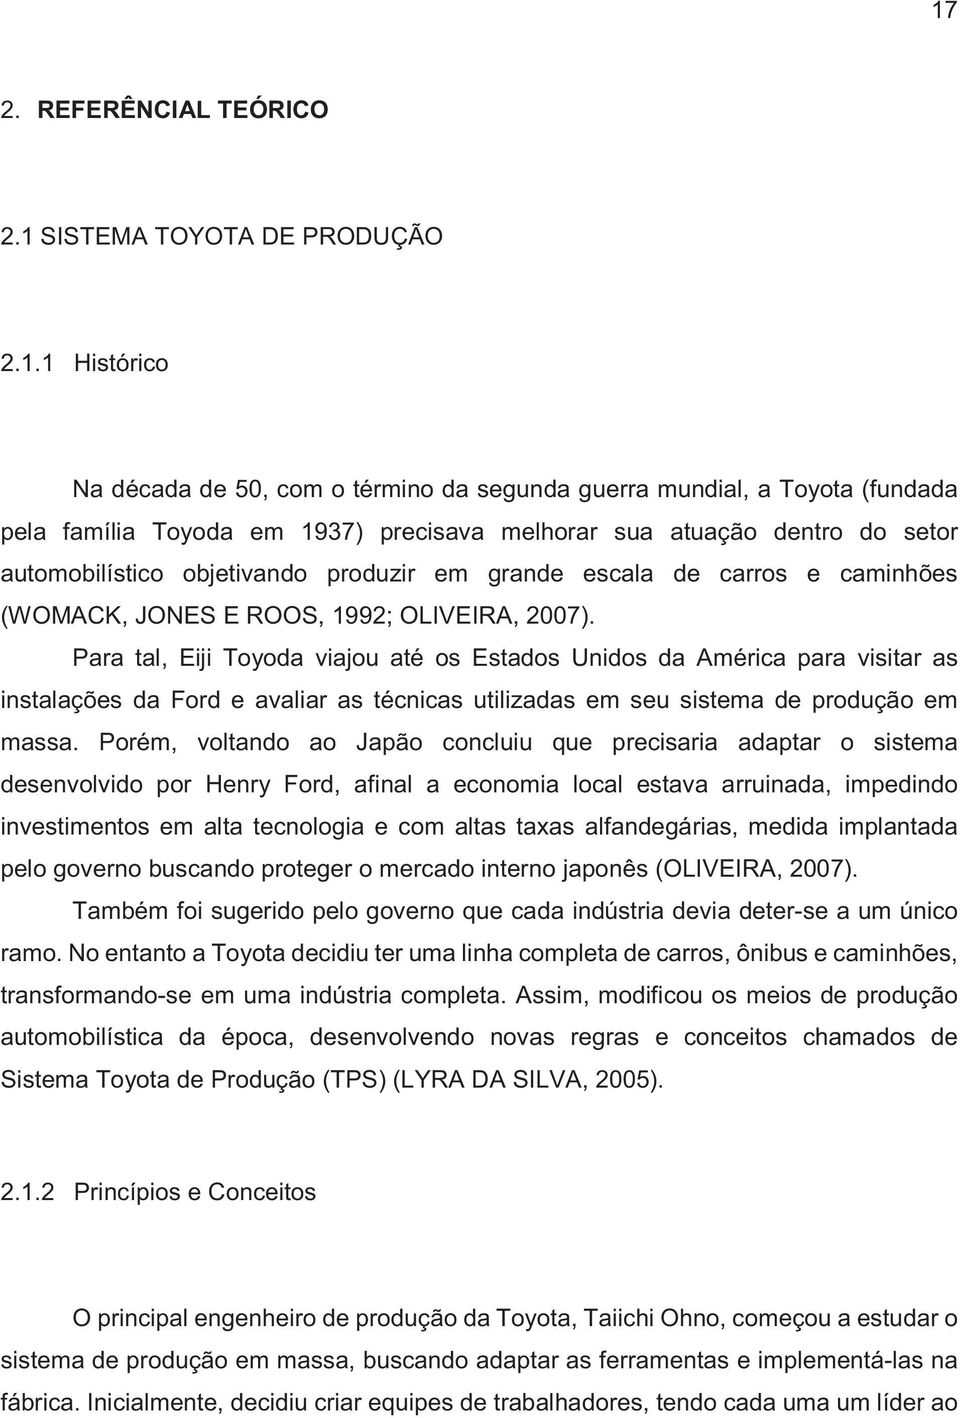 Para tal, Eiji Toyoda viajou até os Estados Unidos da América para visitar as instalações da Ford e avaliar as técnicas utilizadas em seu sistema de produção em massa.